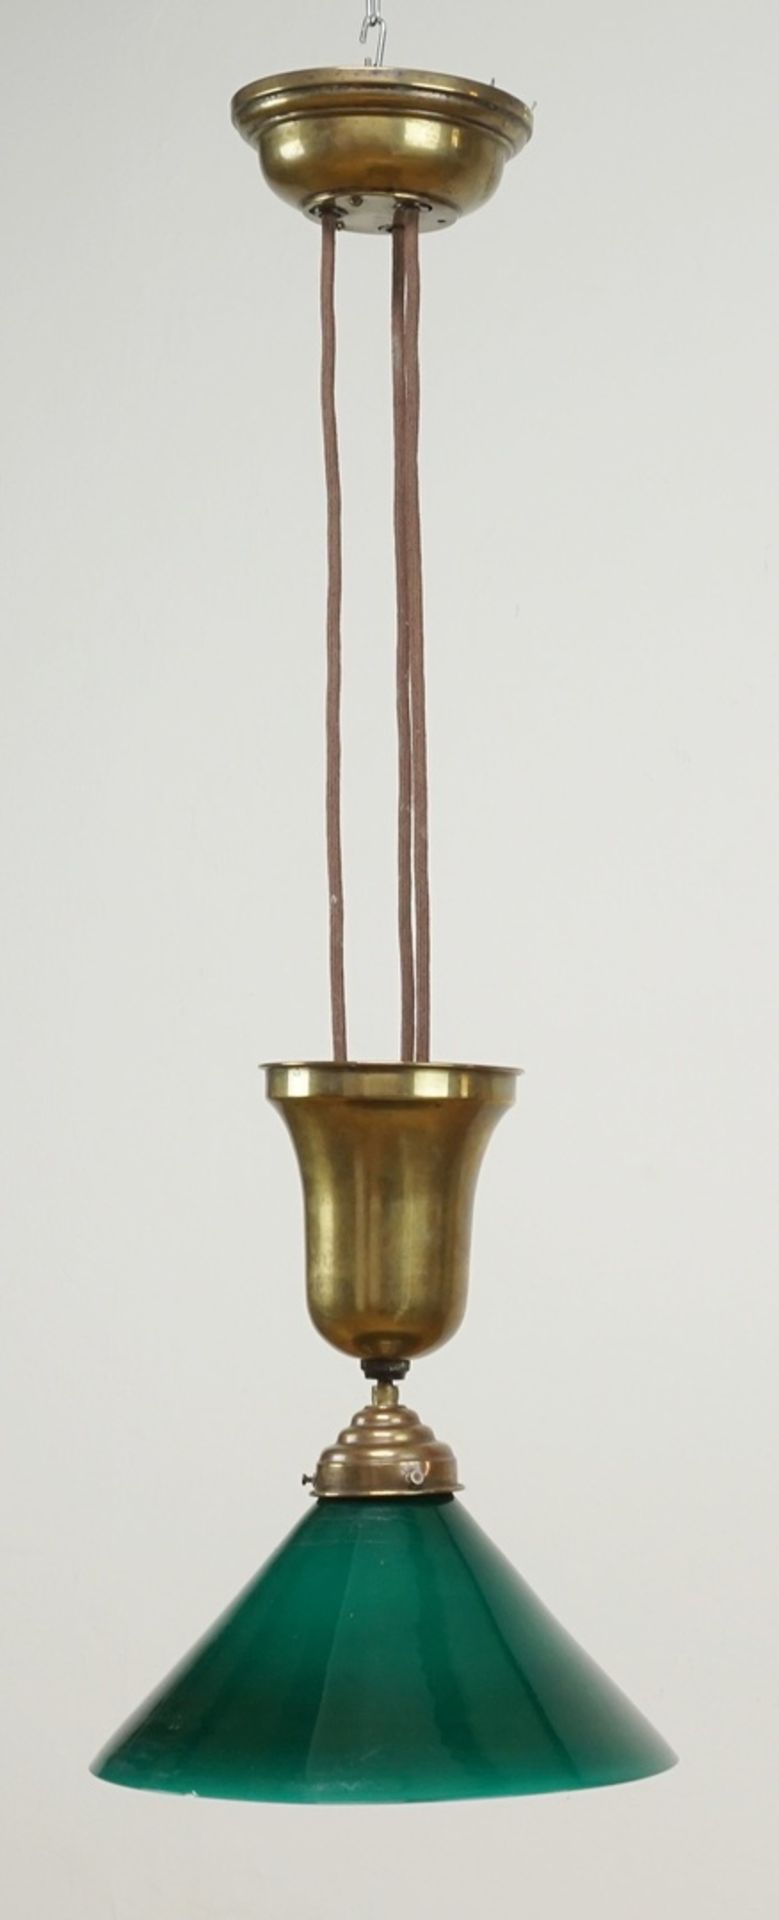 Zuglampe / Deckenlampe, um 1920Beschriftung "D.R.P. System aus den Ruthen", Nr. 304, Lampenschirm